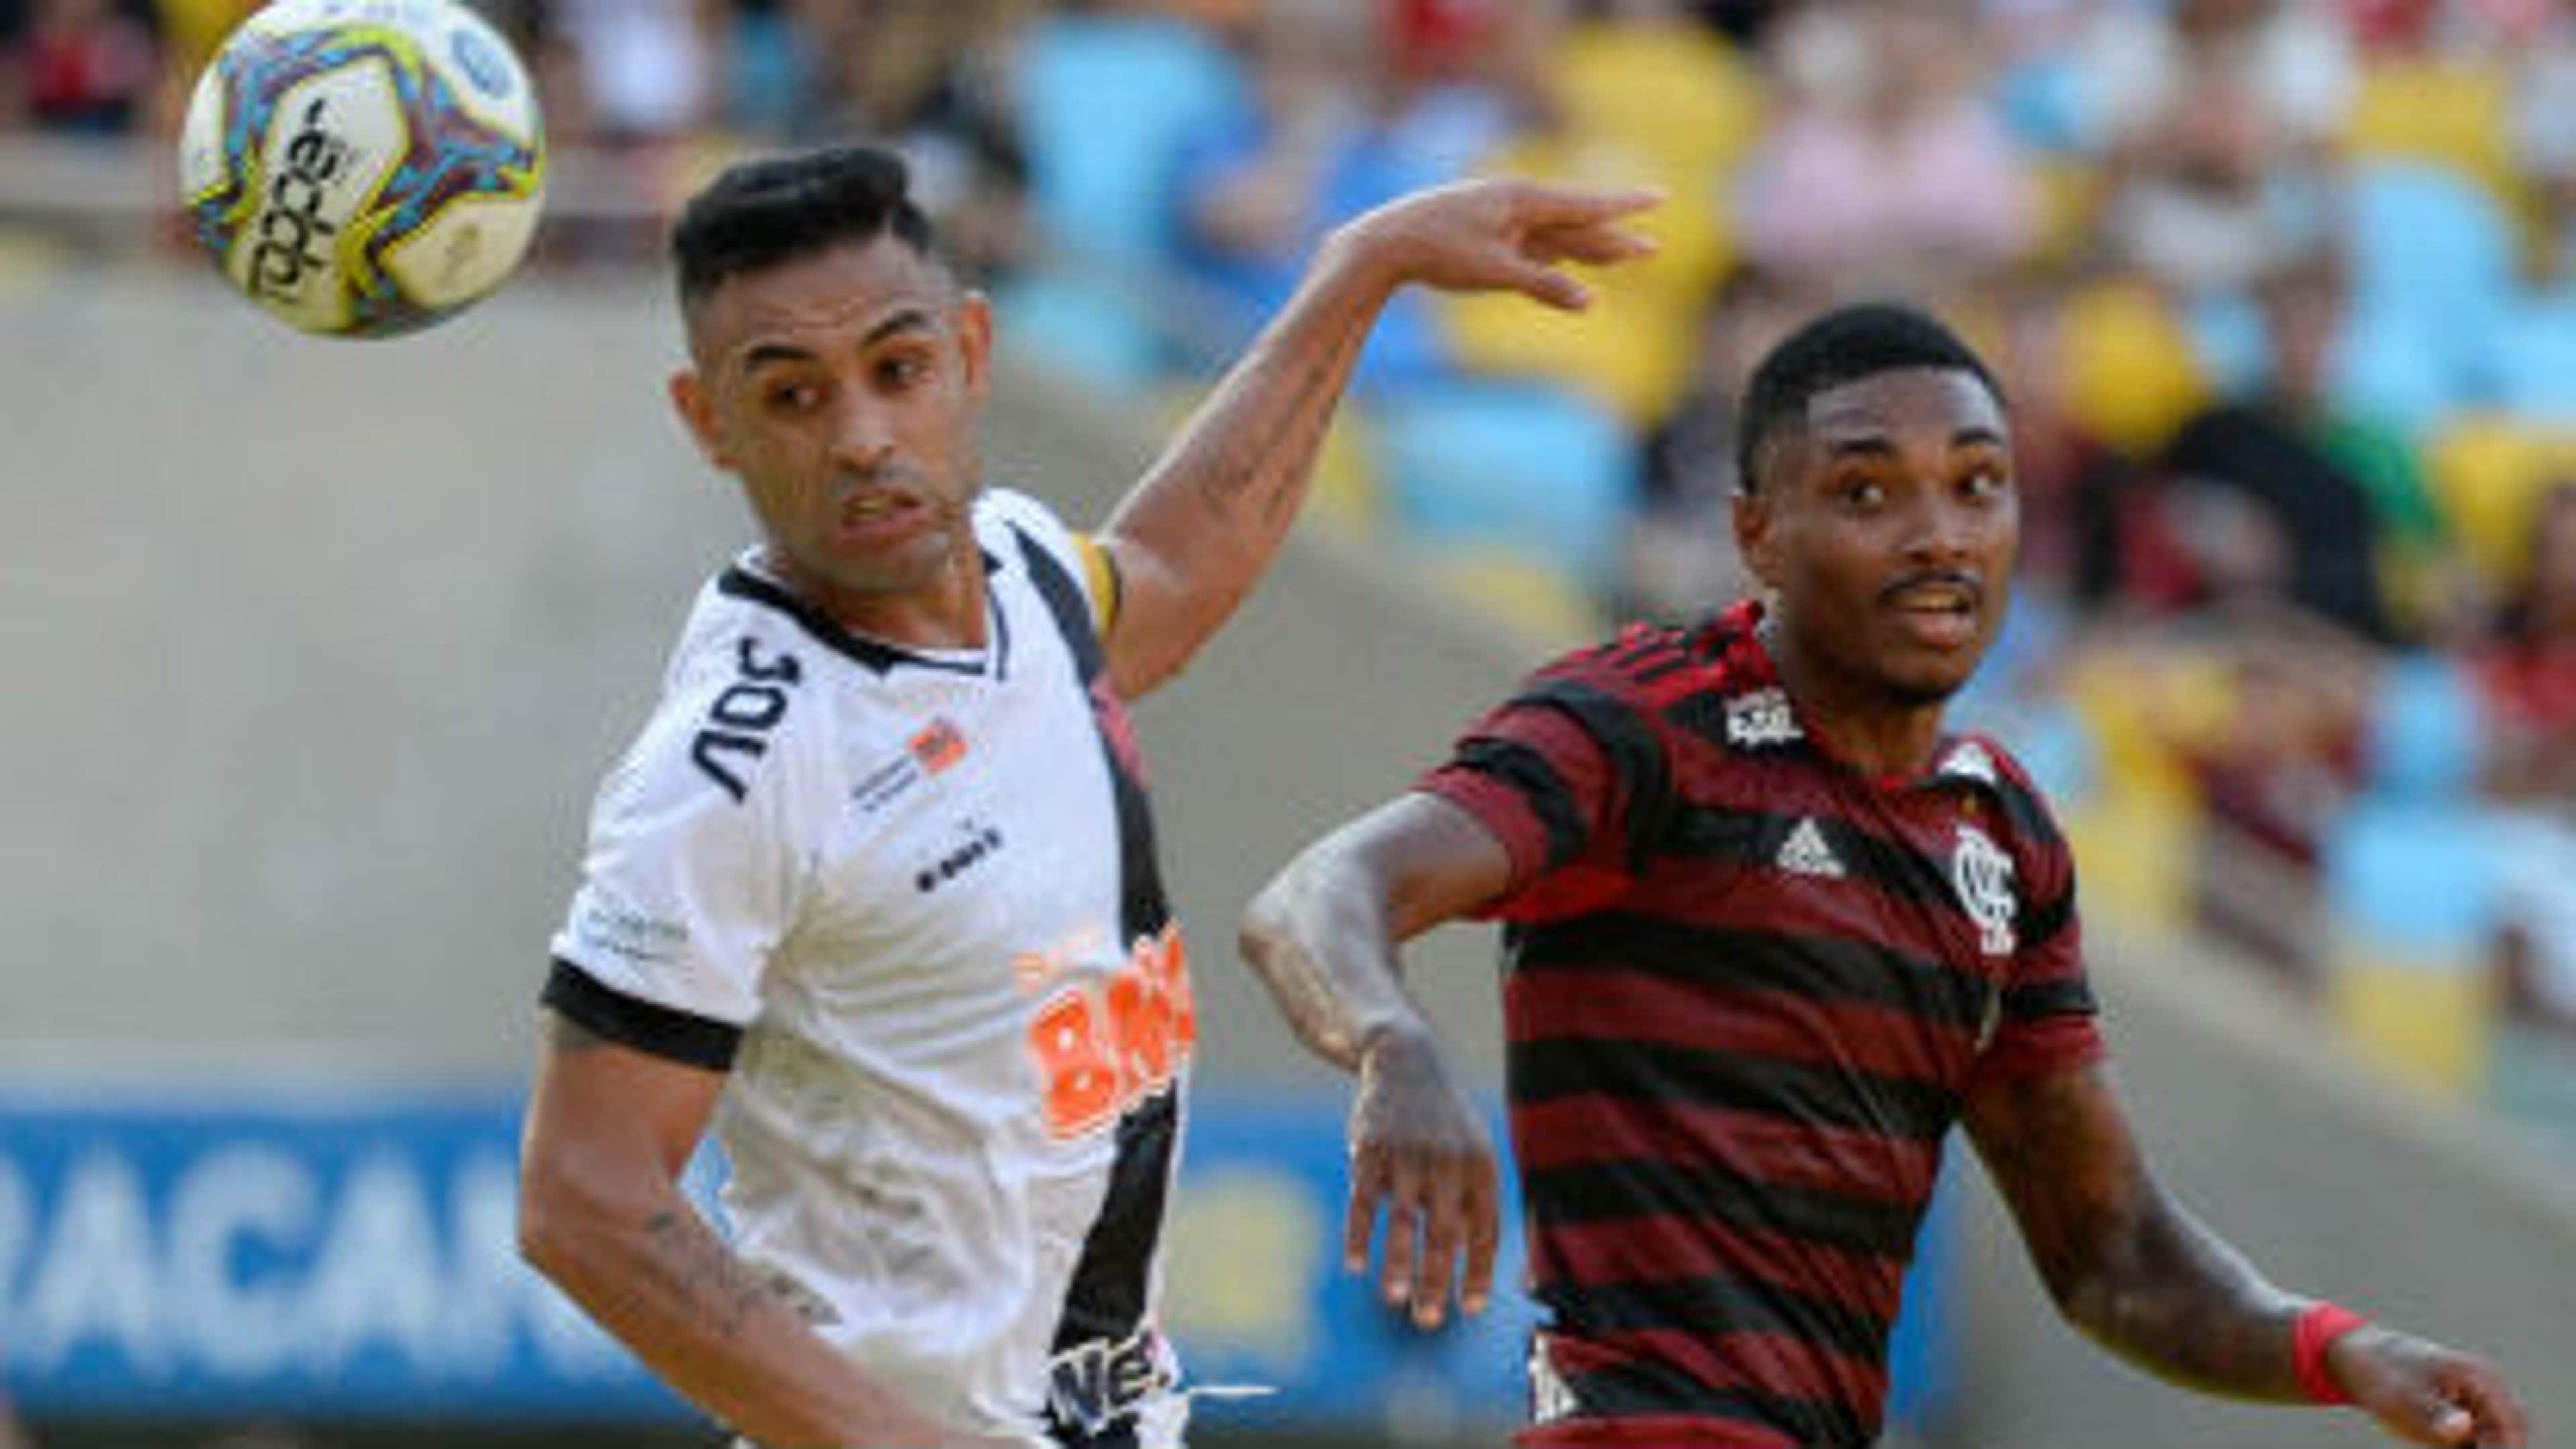 Os números recentes de Vasco x Flamengo